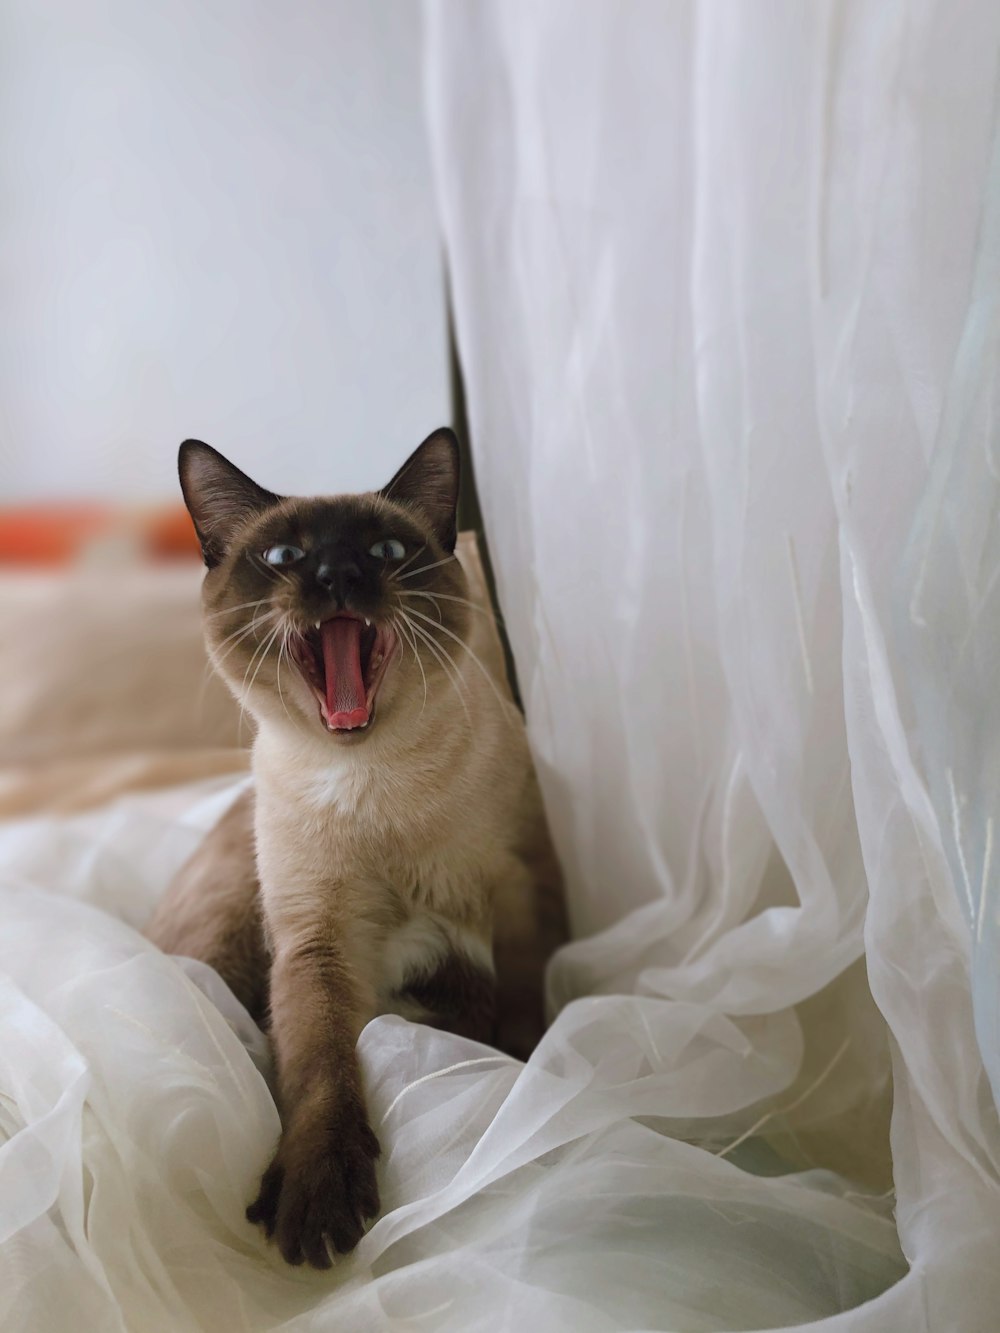 Un gato siamés bosteza mientras está sentado en una cama